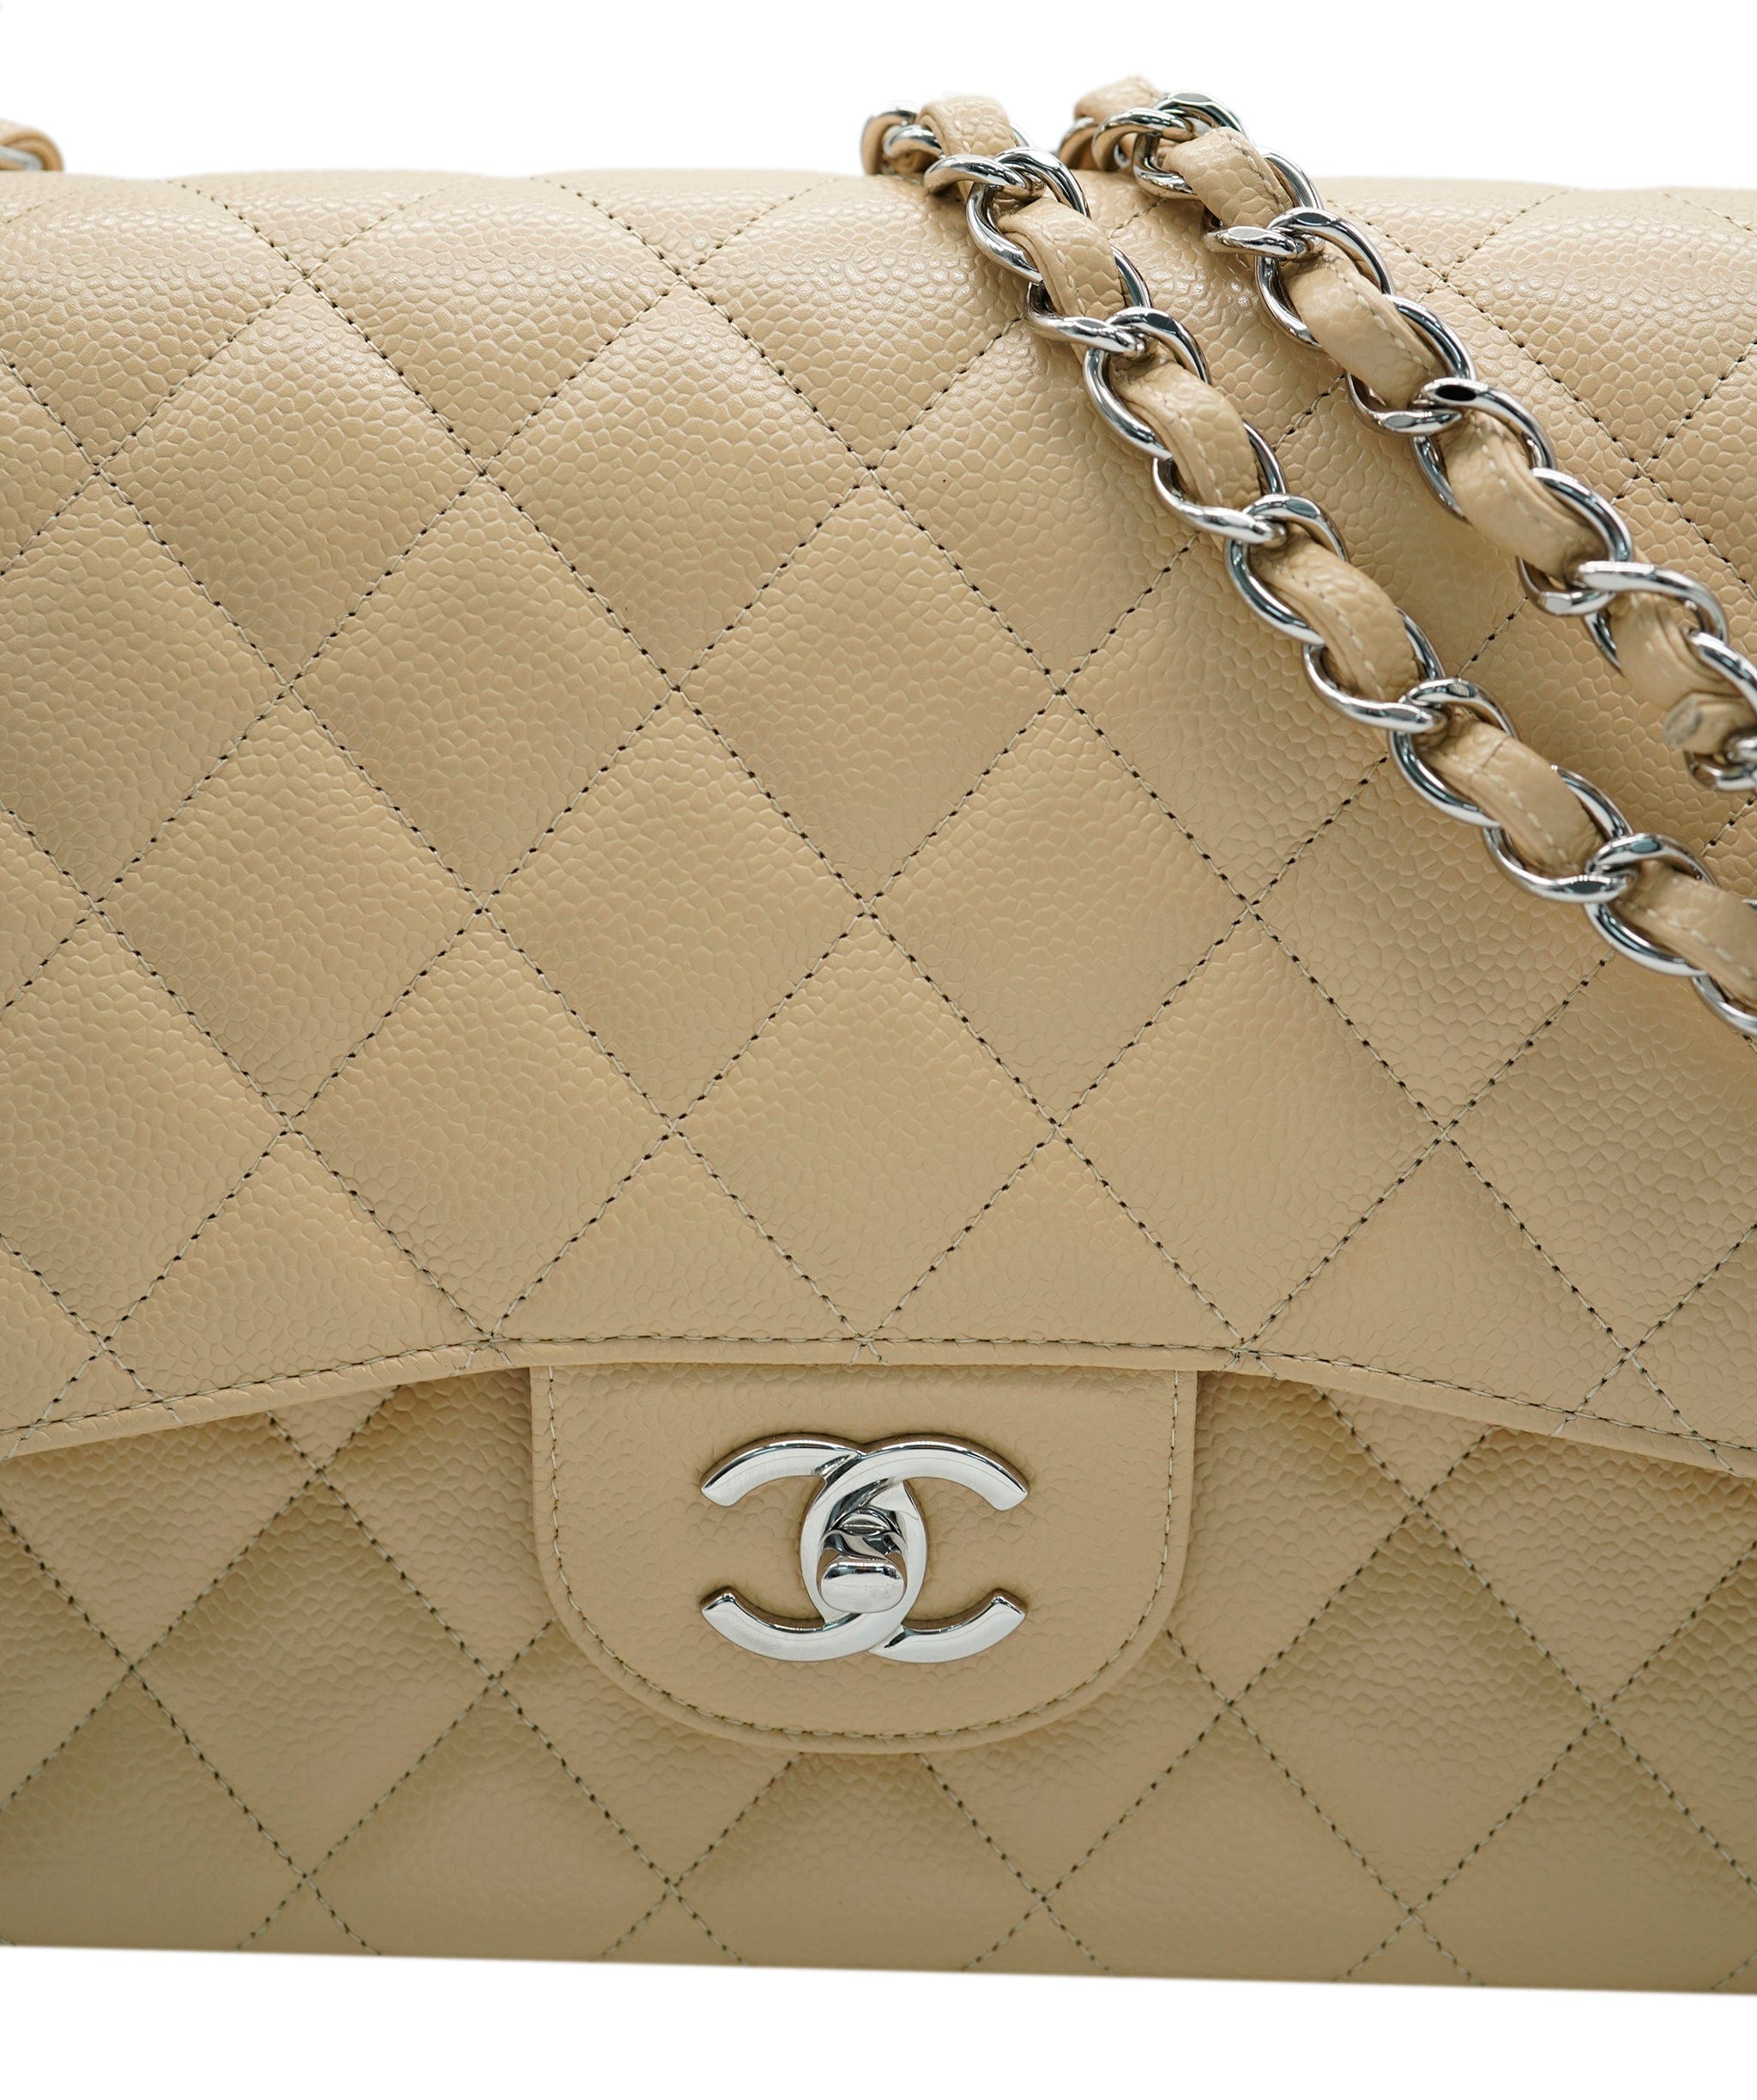 Chanel Chanel Beige Jumbo Bag  ALC0620